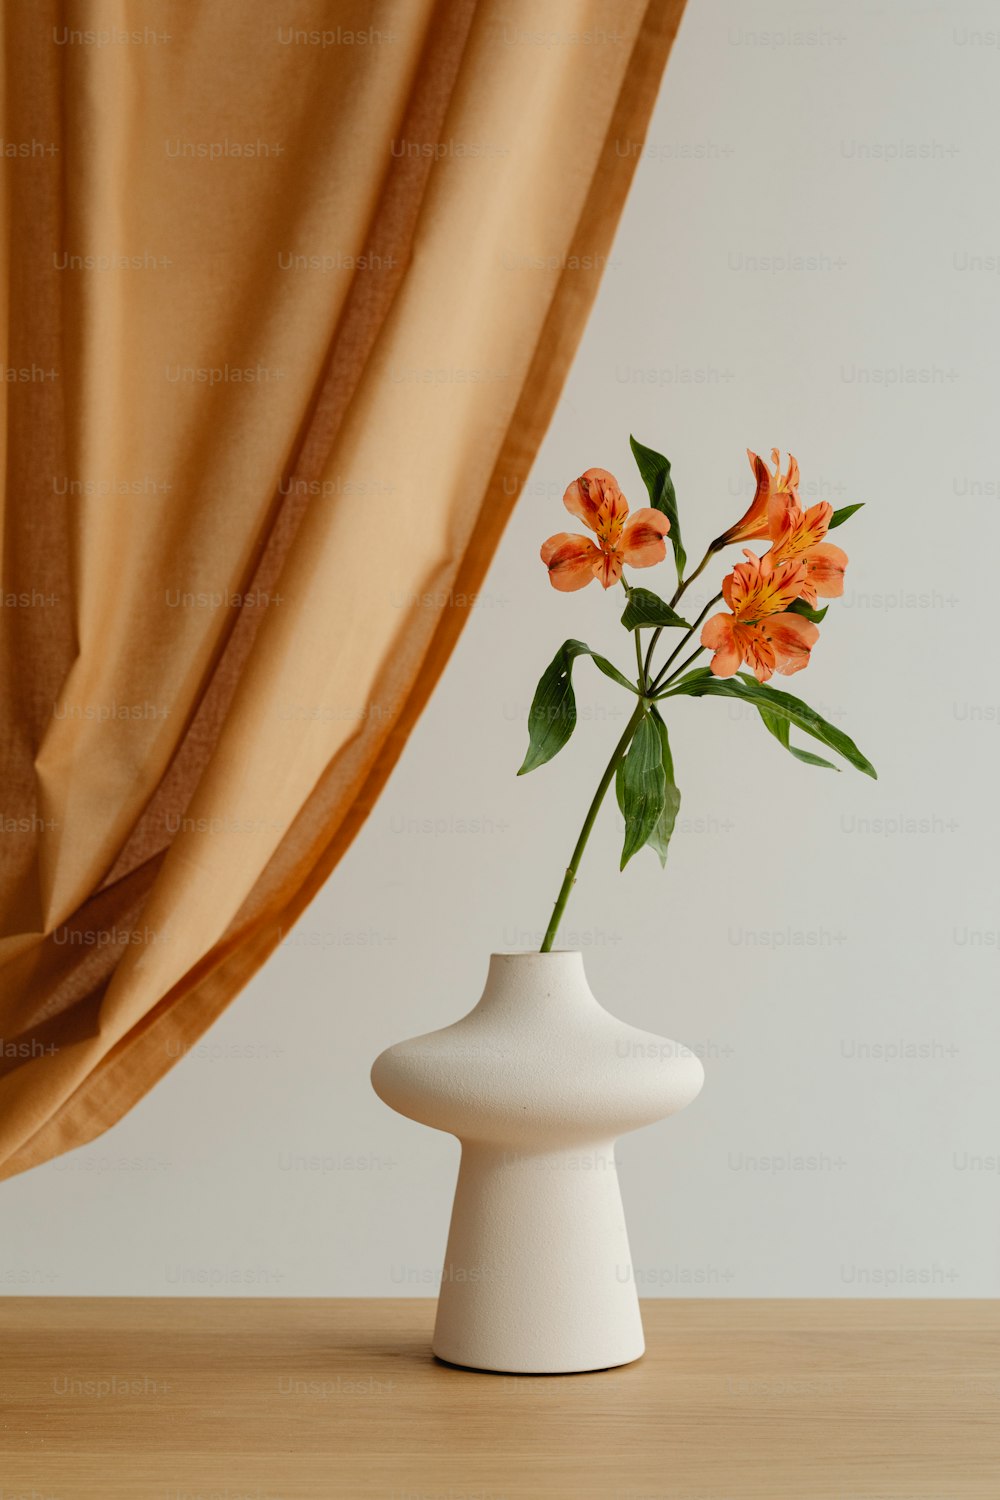 un vaso bianco con fiori d'arancio in esso